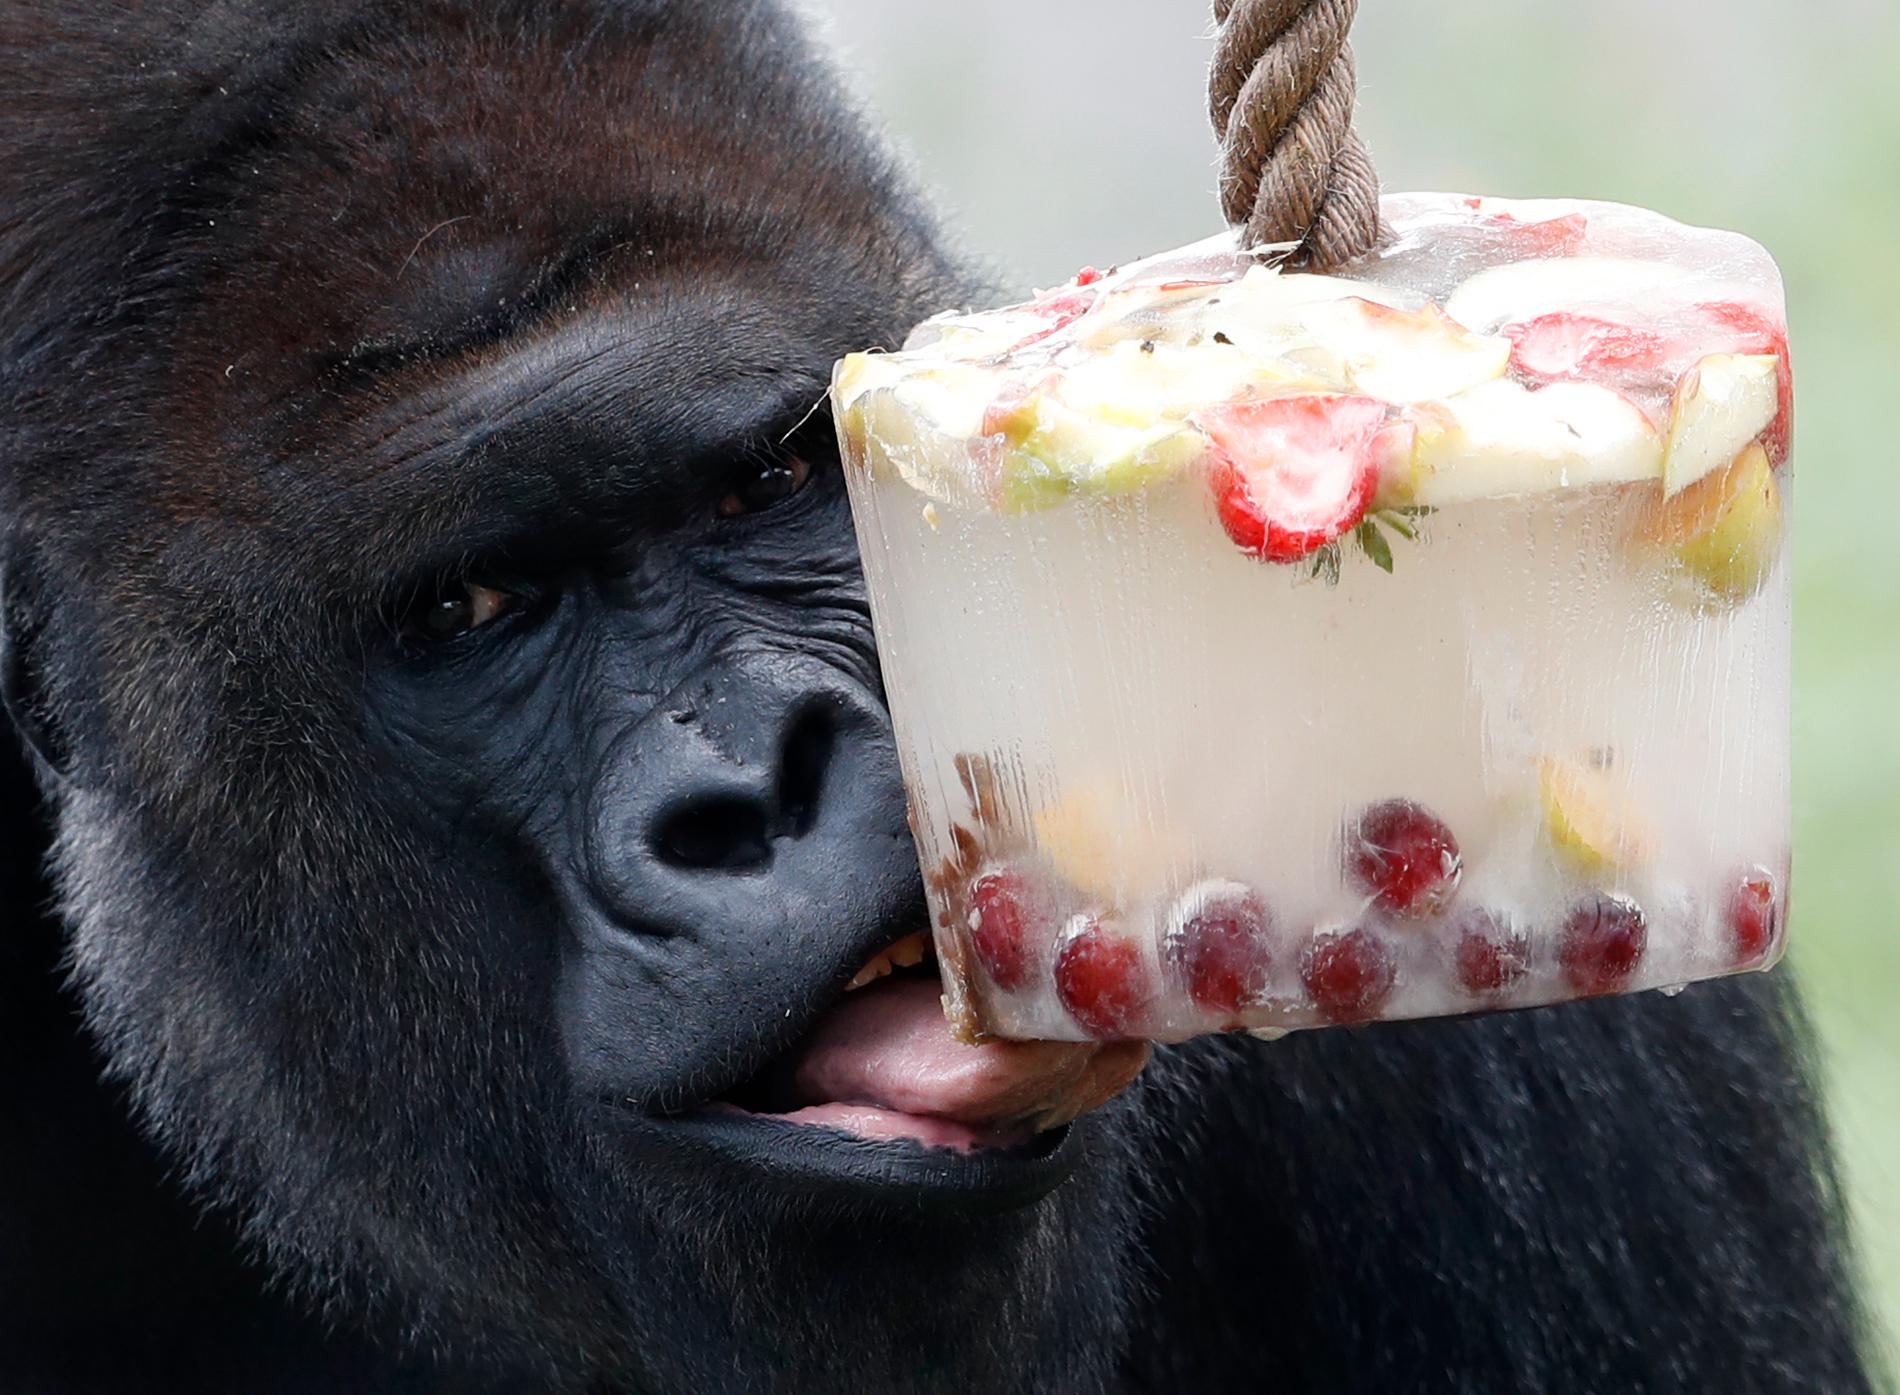 Gorillan Kijivu avnjuter ett isblock med frukt på ett zoo i Prag. Arkivbild.